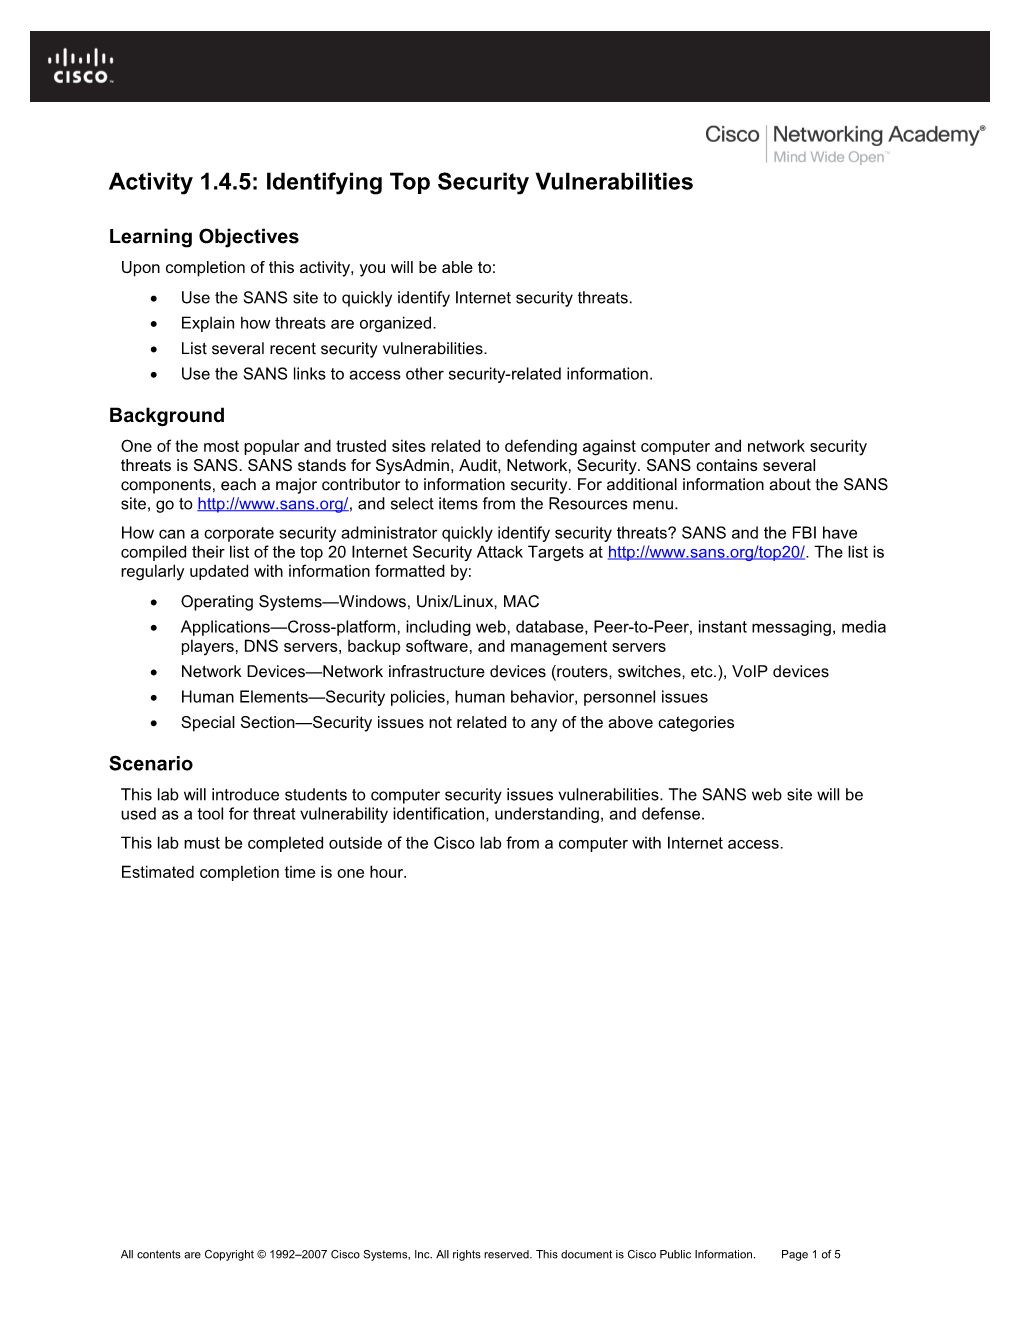 Identifying Top Security Vulnerabilities